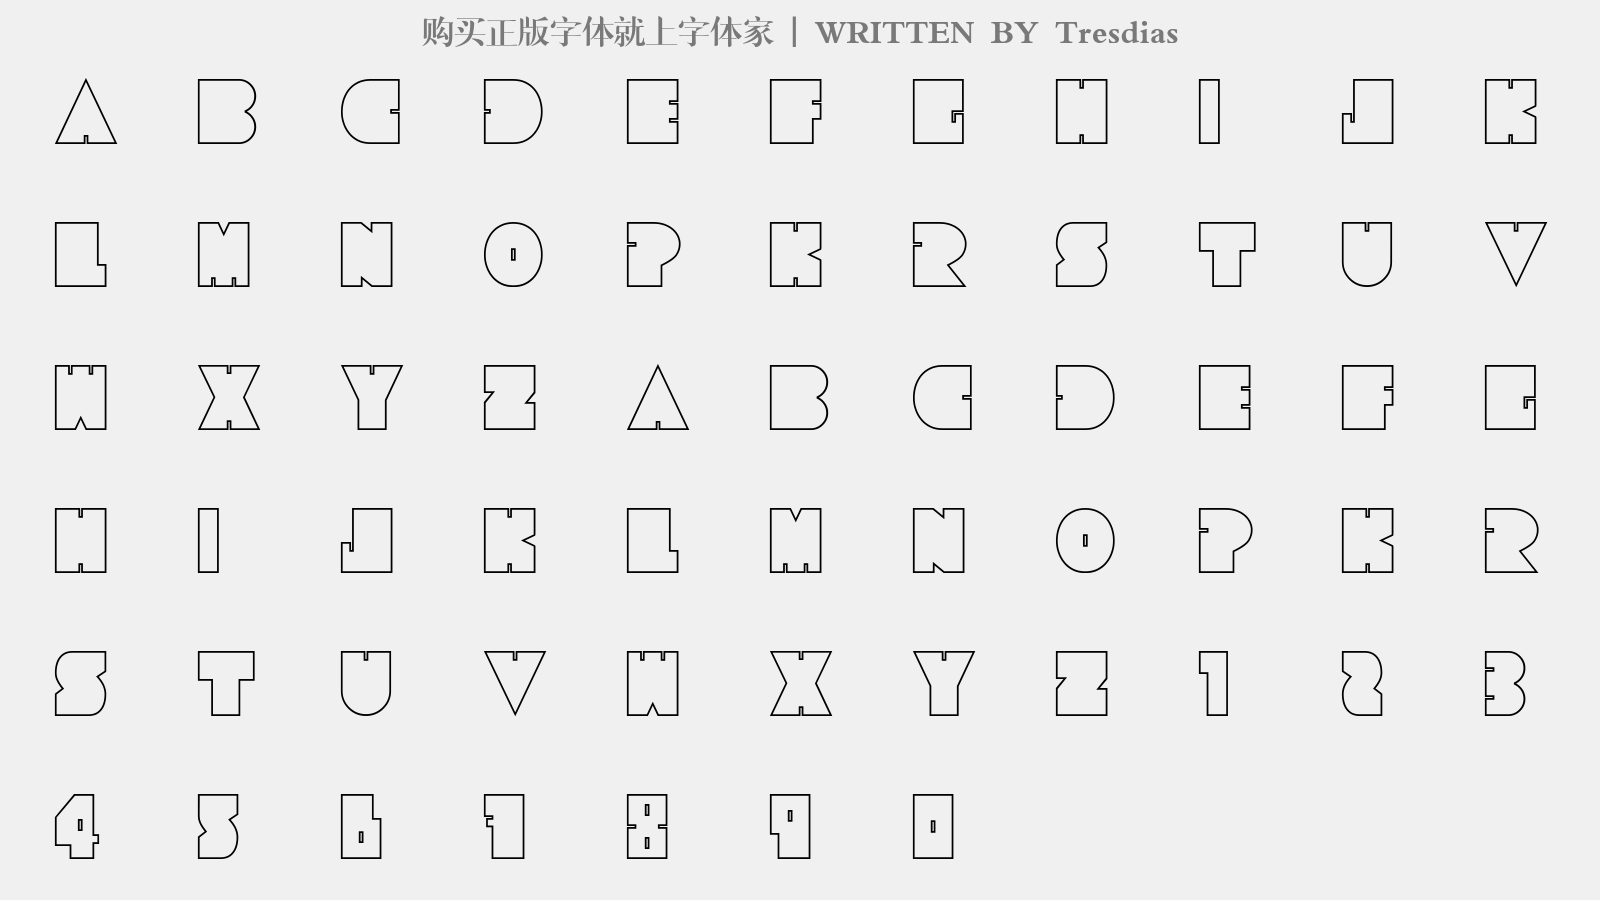 Tresdias - 大写字母/小写字母/数字